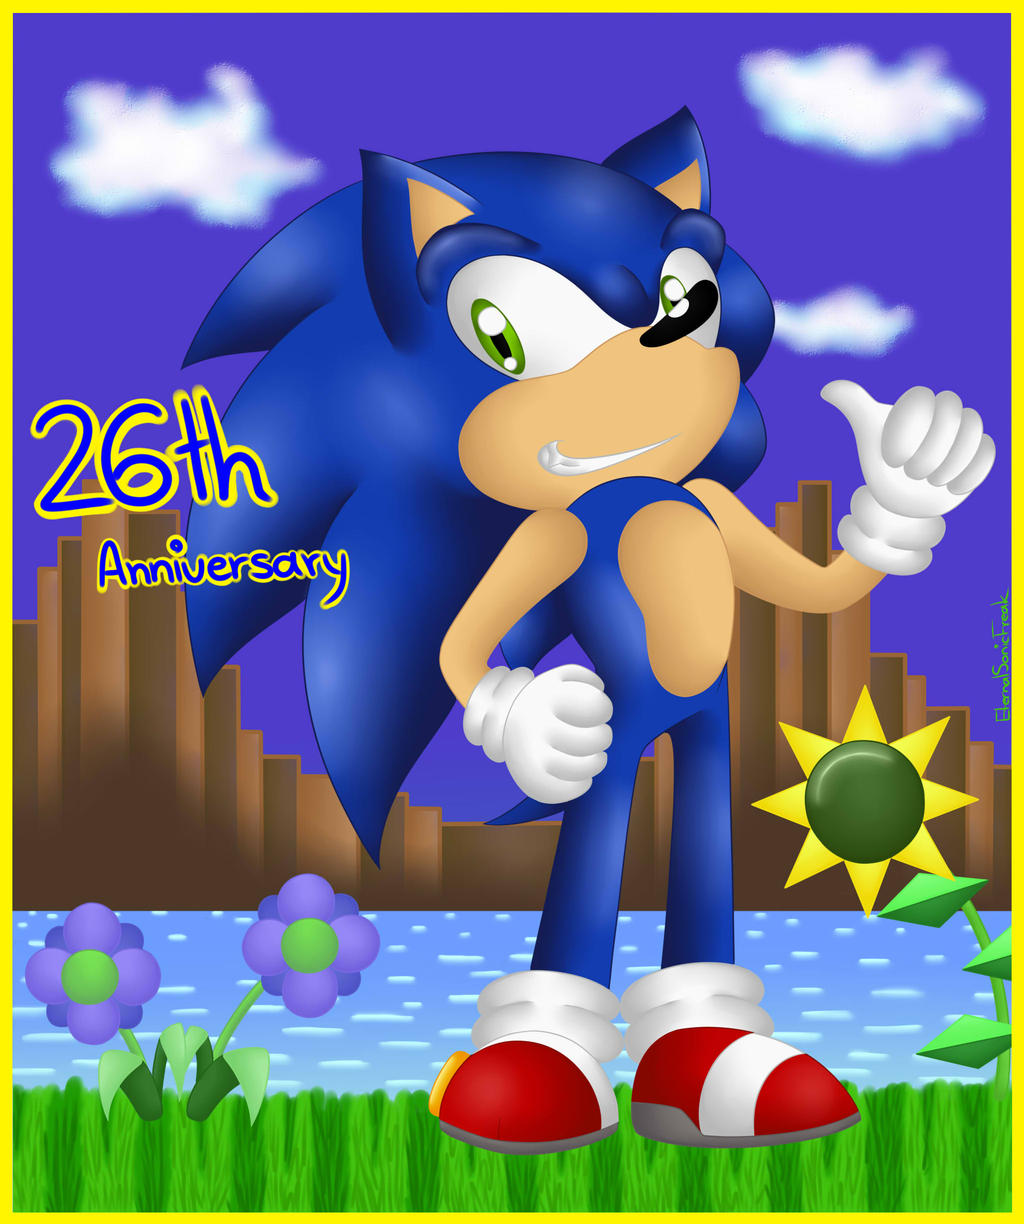 Sonic's 26th Anniversary